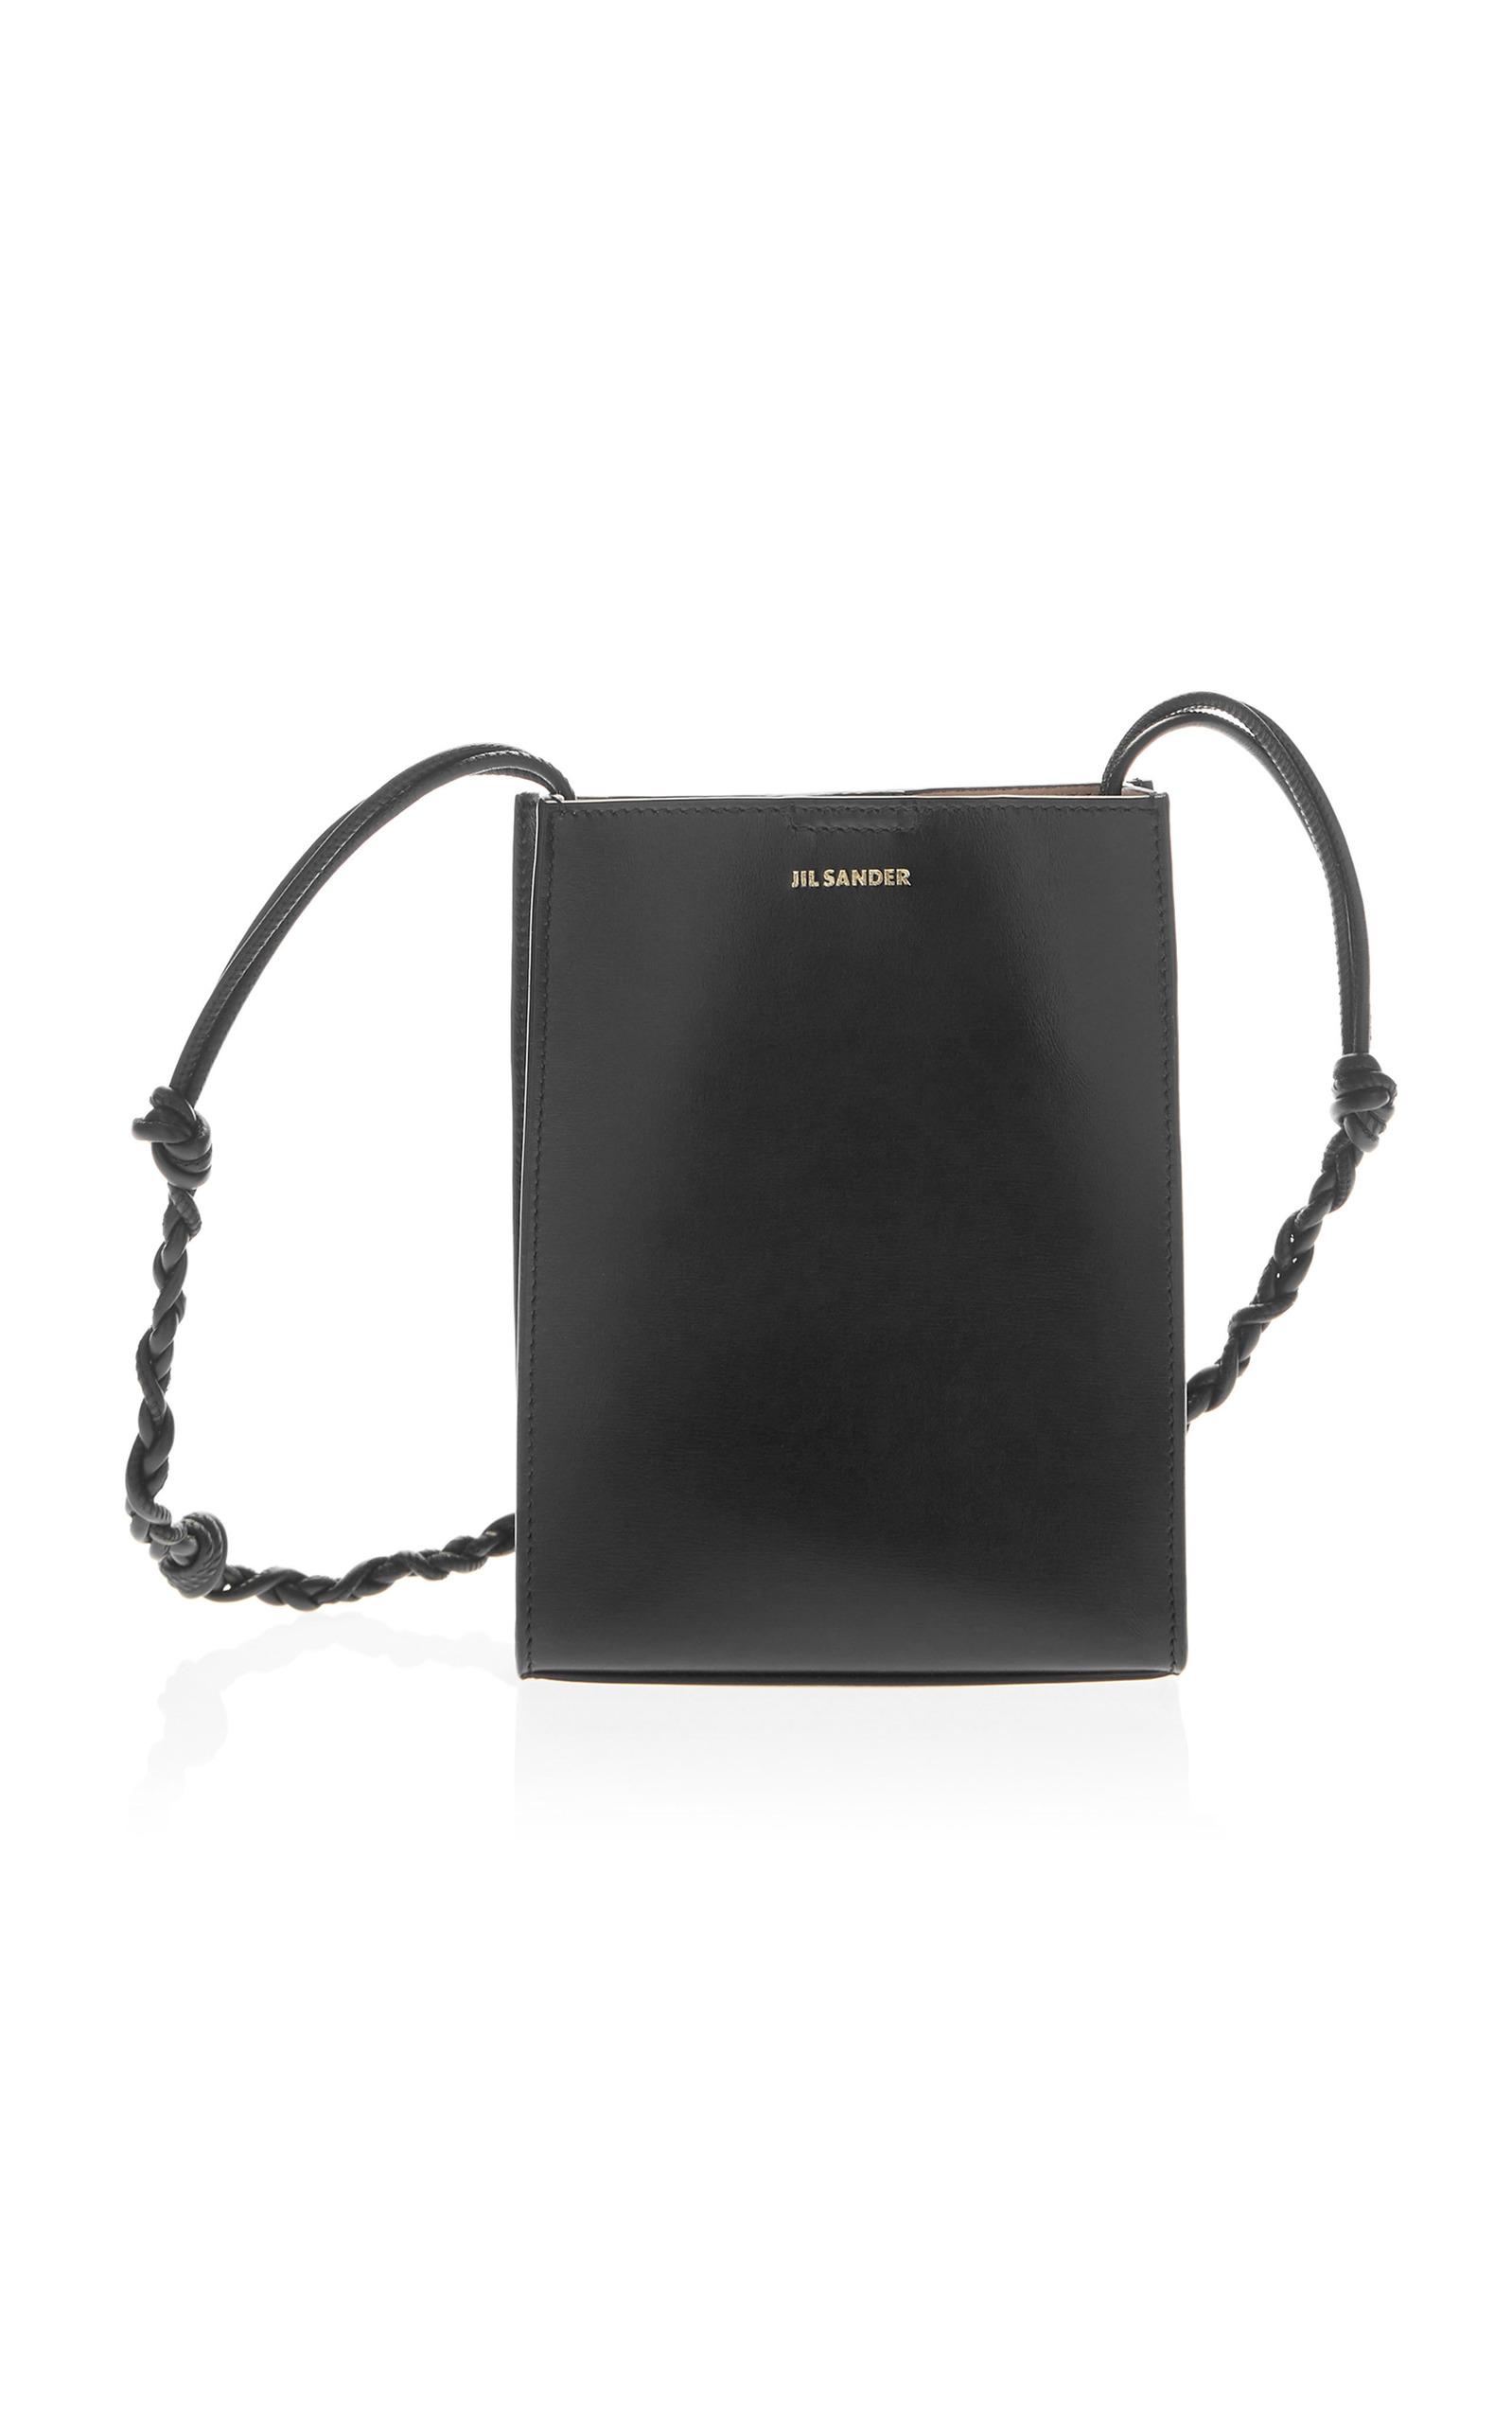 Jil Sander Leather Small Tangle Shoulder Bag in Black | Lyst